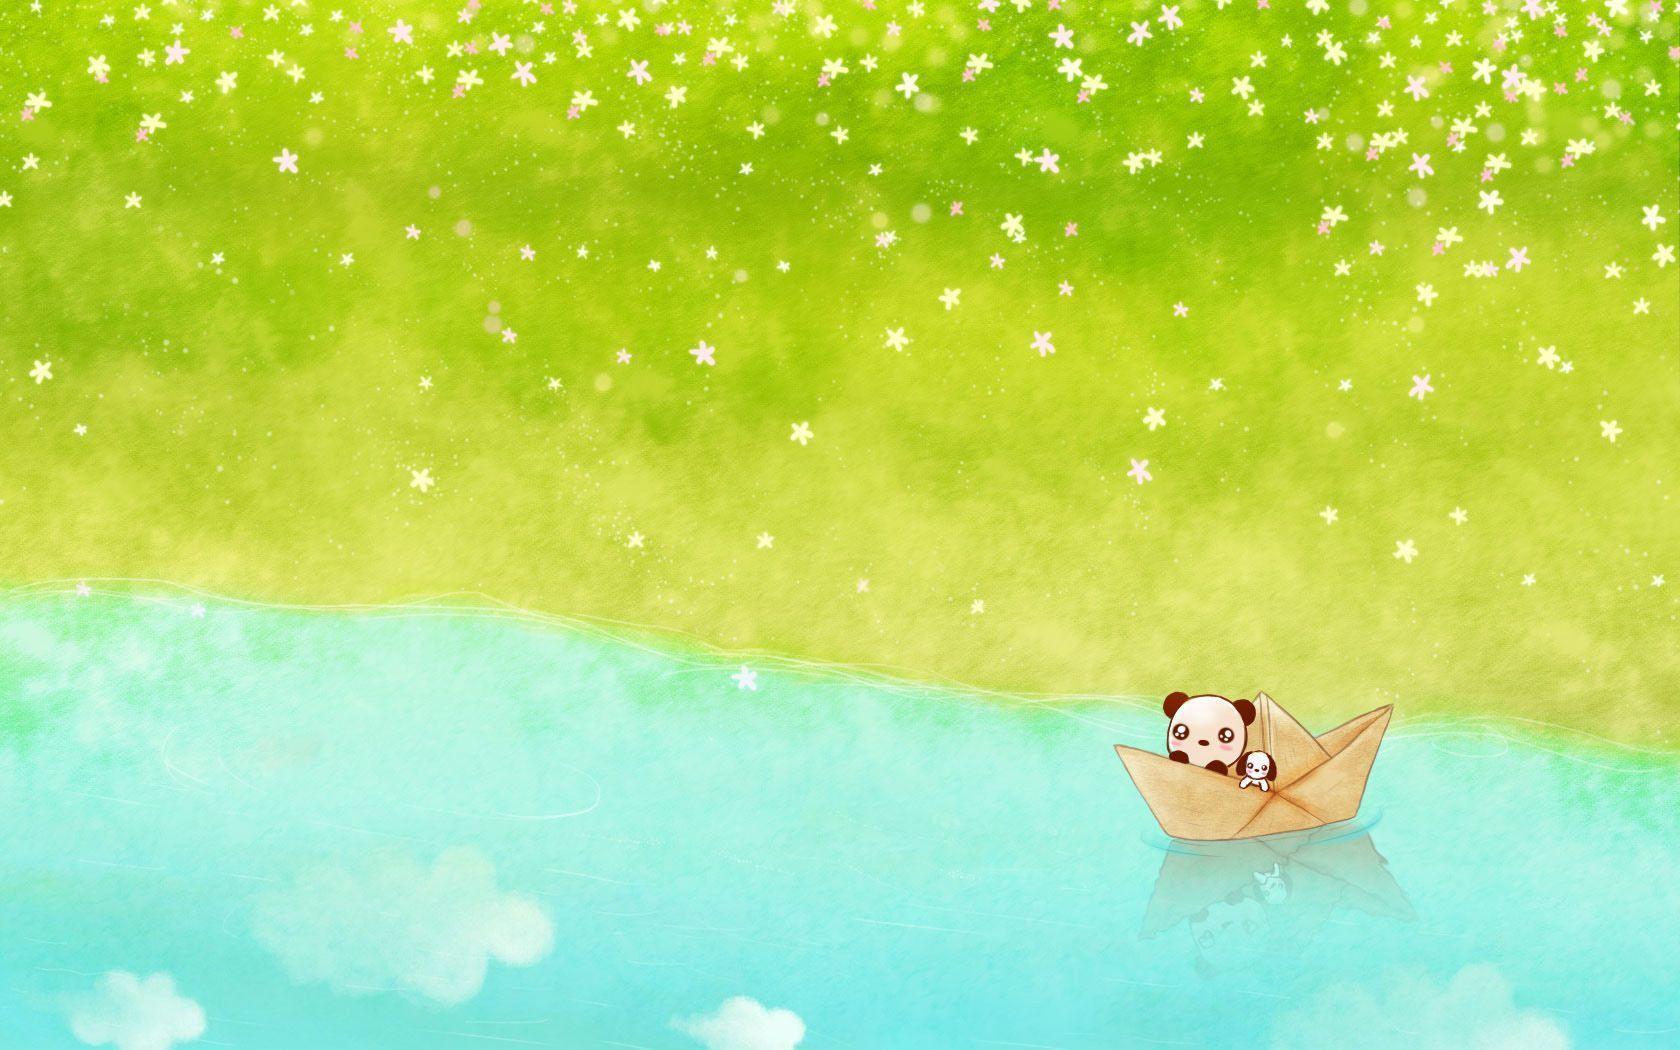 Wallpaper For > Cute Panda Cartoon Wallpaper